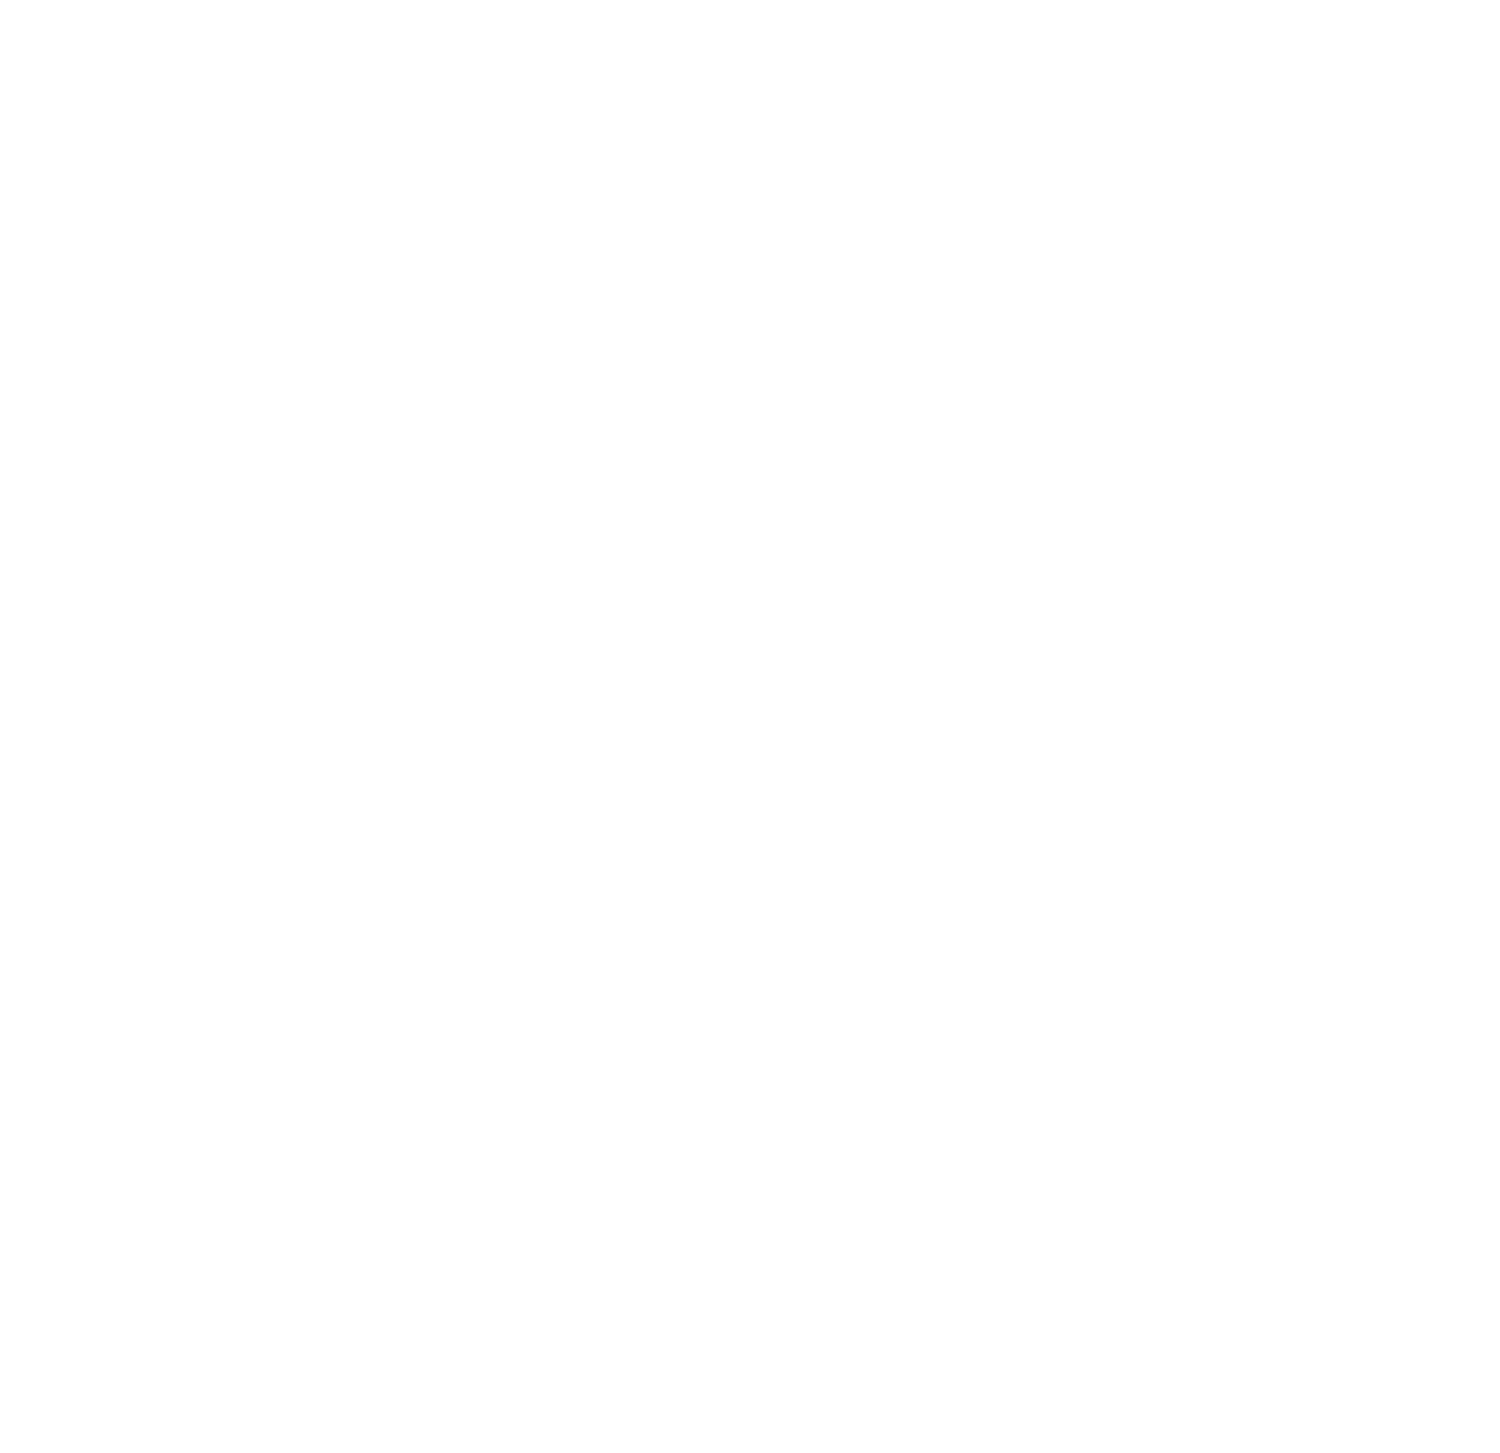 Ellis Center